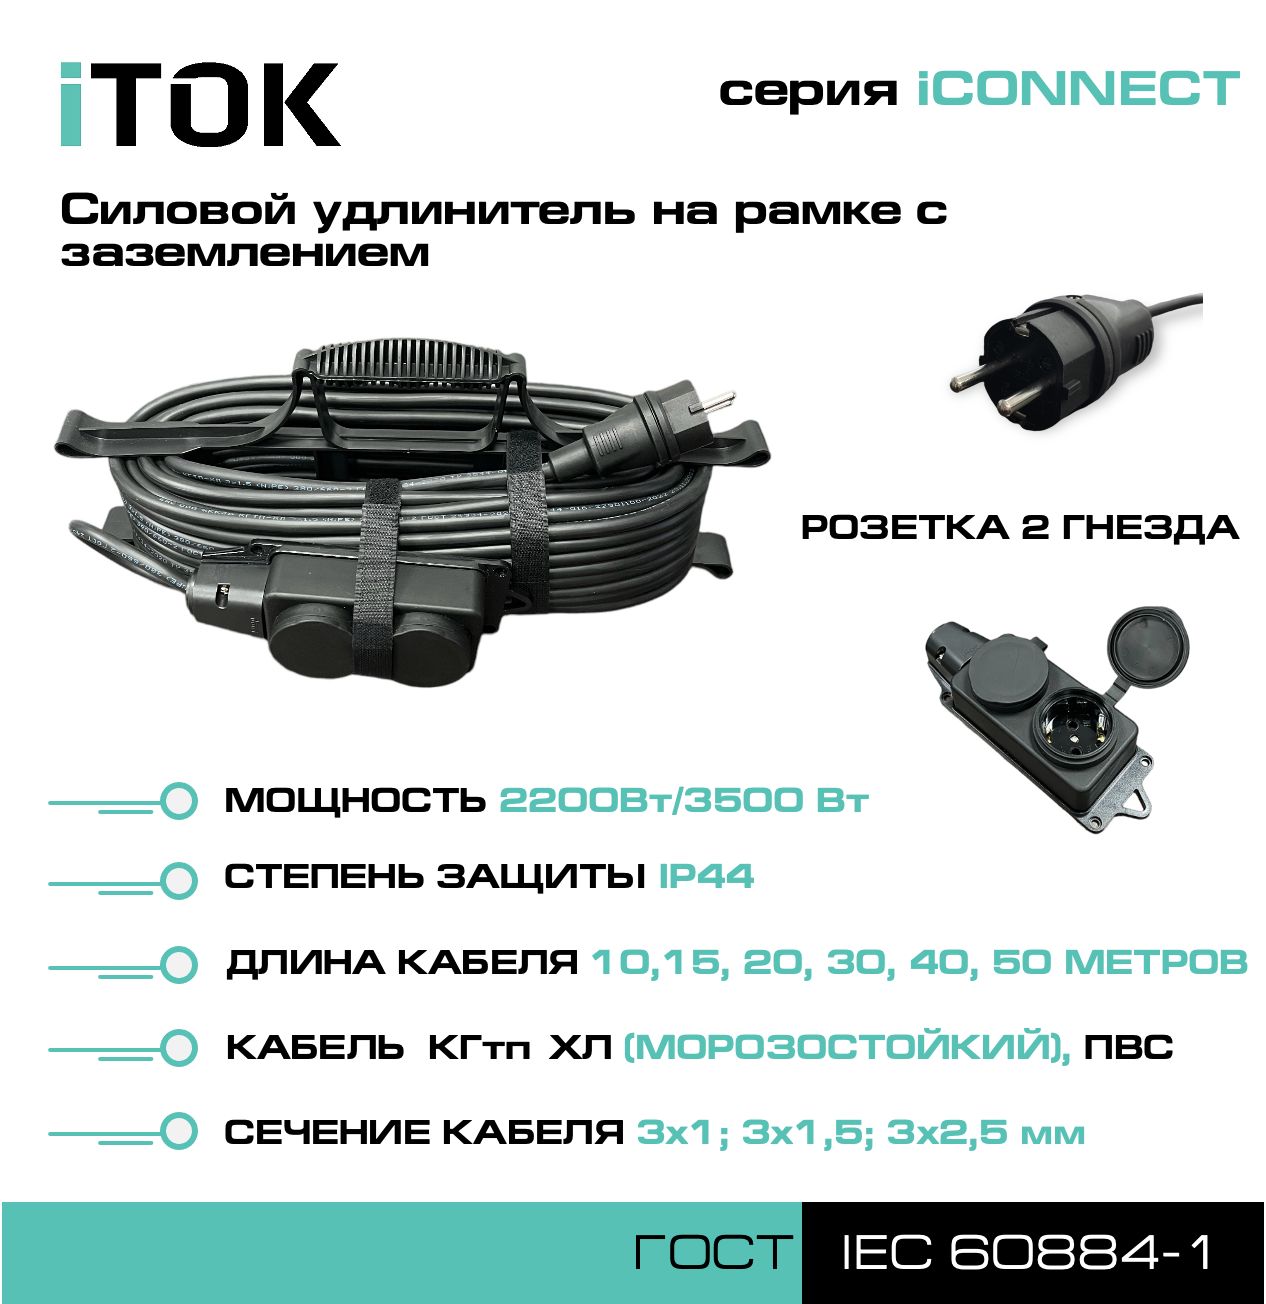 Удлинитель на рамке с заземлением серии iTOK iCONNECT КГтп-ХЛ 3х2,5 мм 2 гнезда IP44 20 м